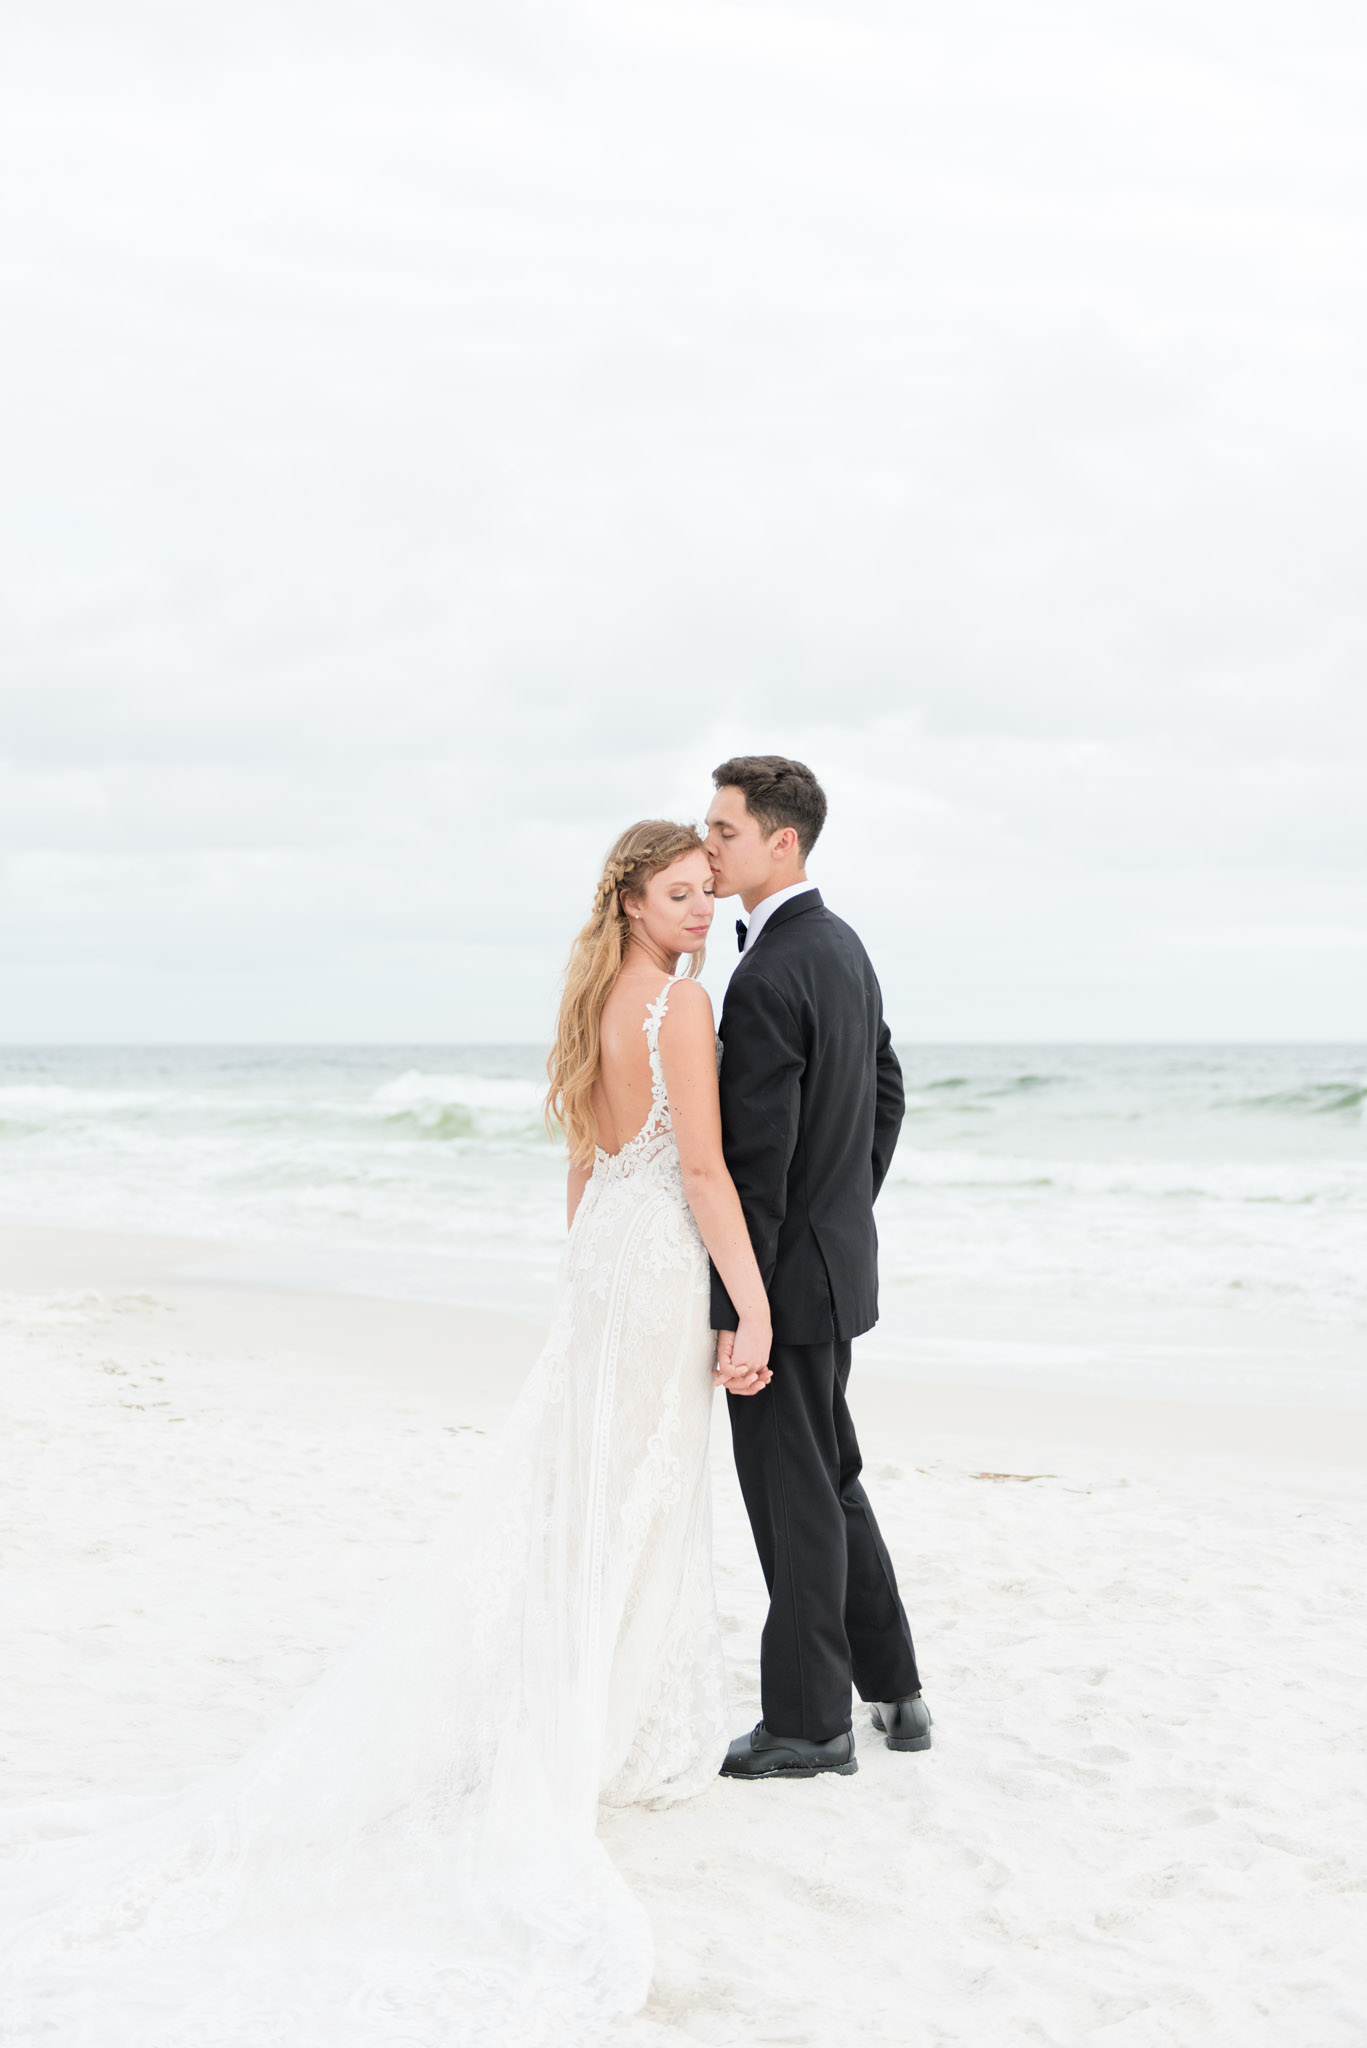 Groom kisses bride on temple on beach.